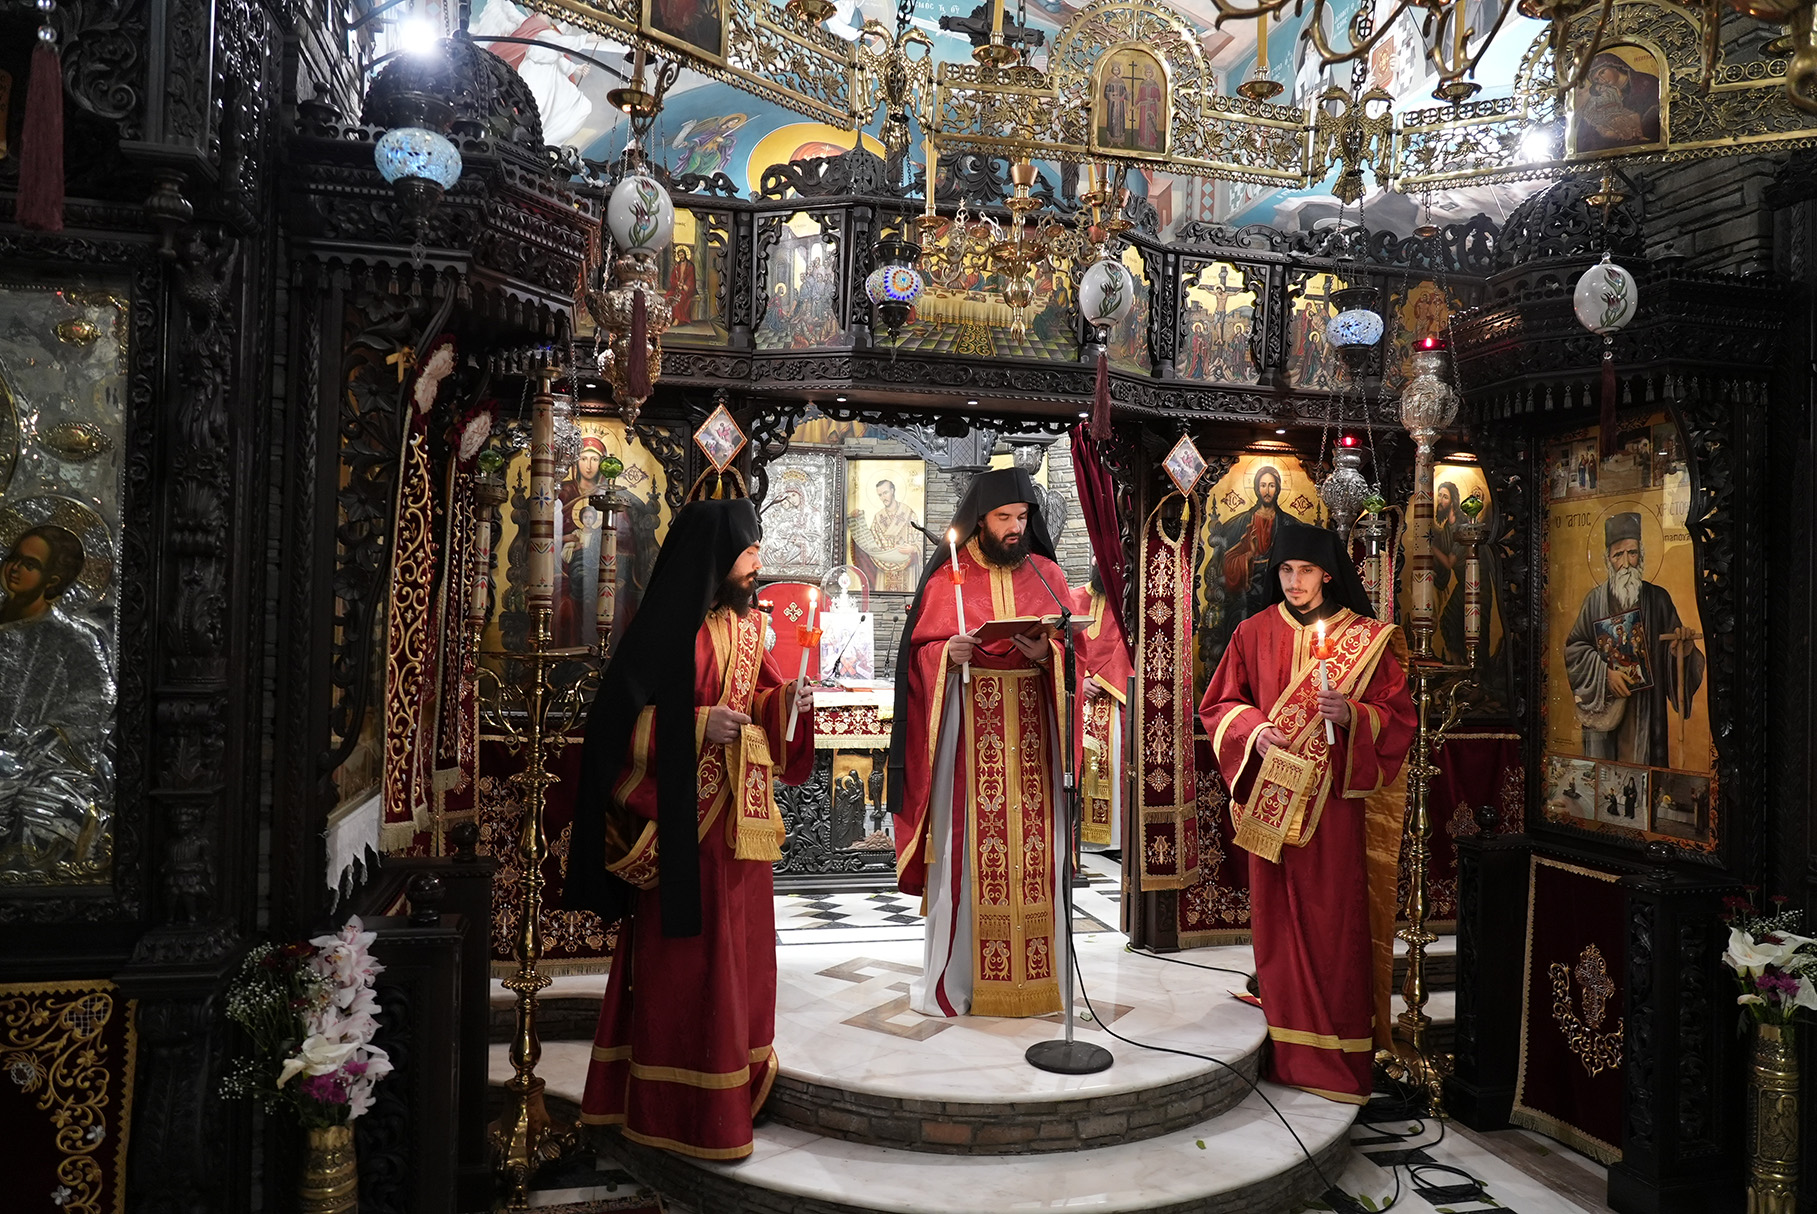 Συγκλονιστική Ανάσταση στο μοναστήρι με το μεγαλύτερο καμπαναριό στον κόσμο, στο Τρίκορφο Ναυπακτίας